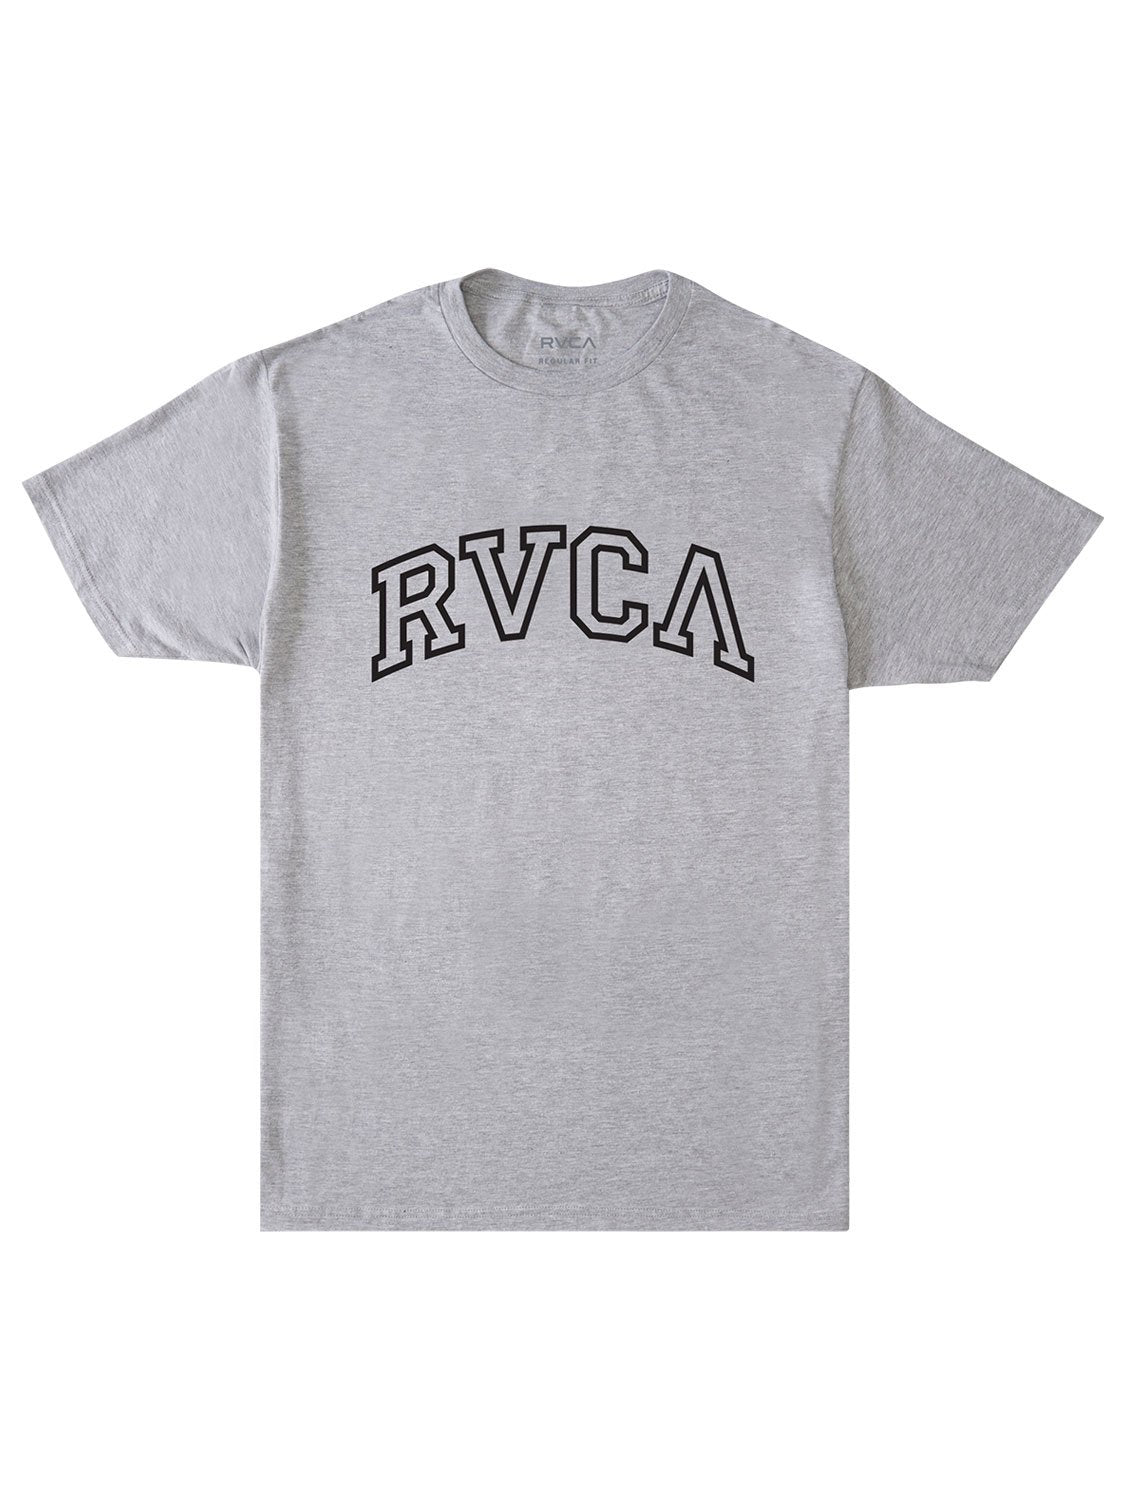 RVCA Men's Arched T-Shirt